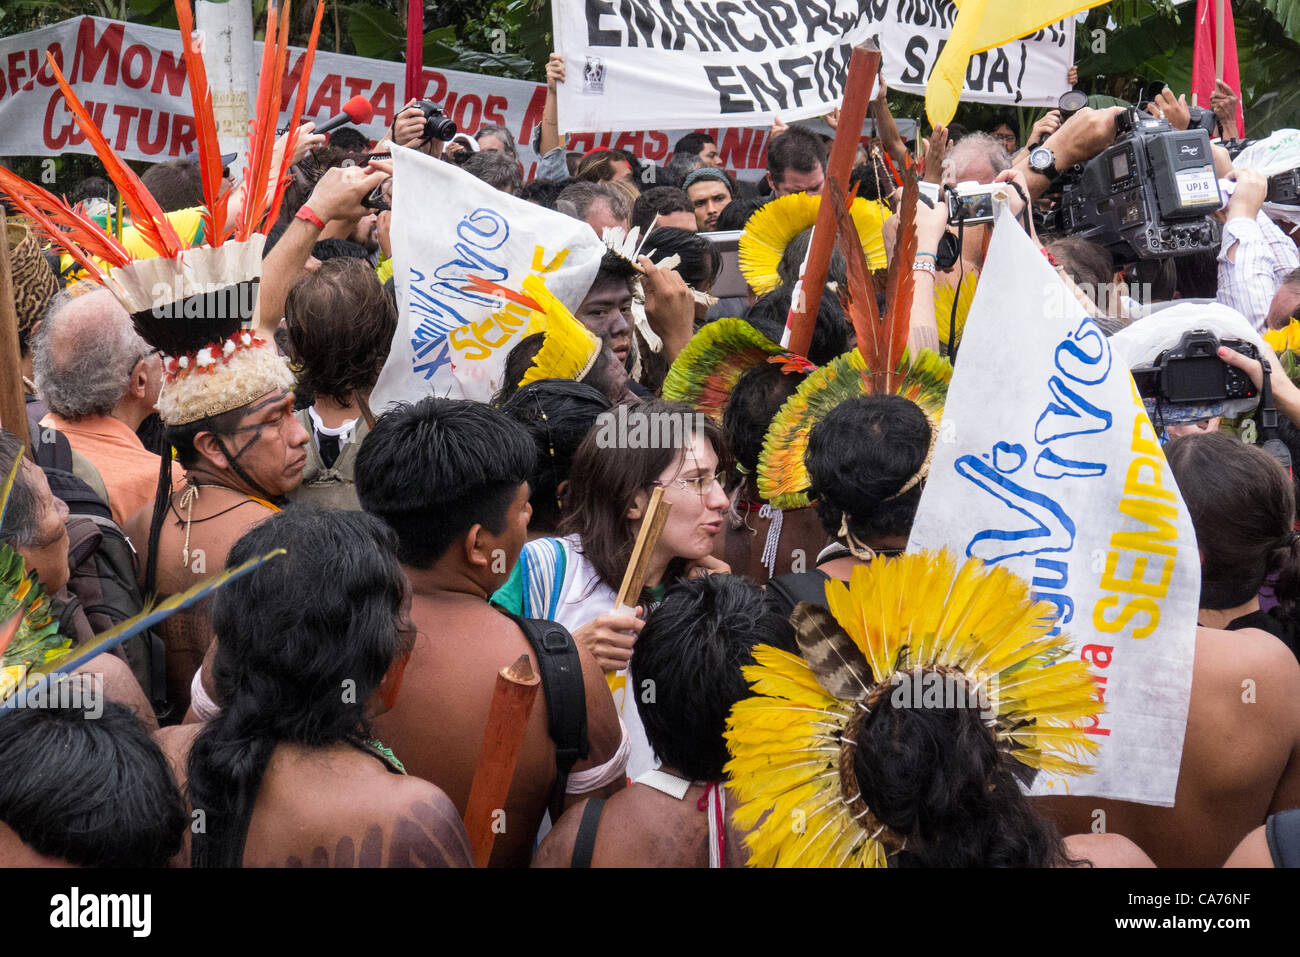 Los pueblos indígenas demuestran llevar Xingu Vivo para sempre (Xingu vivo para siempre) banners para protestar contra la construcción de la represa hidroeléctrica Belo Monte en una manifestación por los pueblos indígenas, el movimiento del pueblo Sin Tierra (MST) y otros grupos de la sociedad civil frente al Riocentro conferencia de las Naciones Unidas. Los manifestantes se mantienen fuera de alcance del sonido e invisible para la Conferencia de las Naciones Unidas. Conferencia de las Naciones Unidas sobre Desarrollo Sostenible (Río+20), Río de Janeiro, Brasil, 20 de junio de 2012. Foto © Patrick Cunningham. Foto de stock